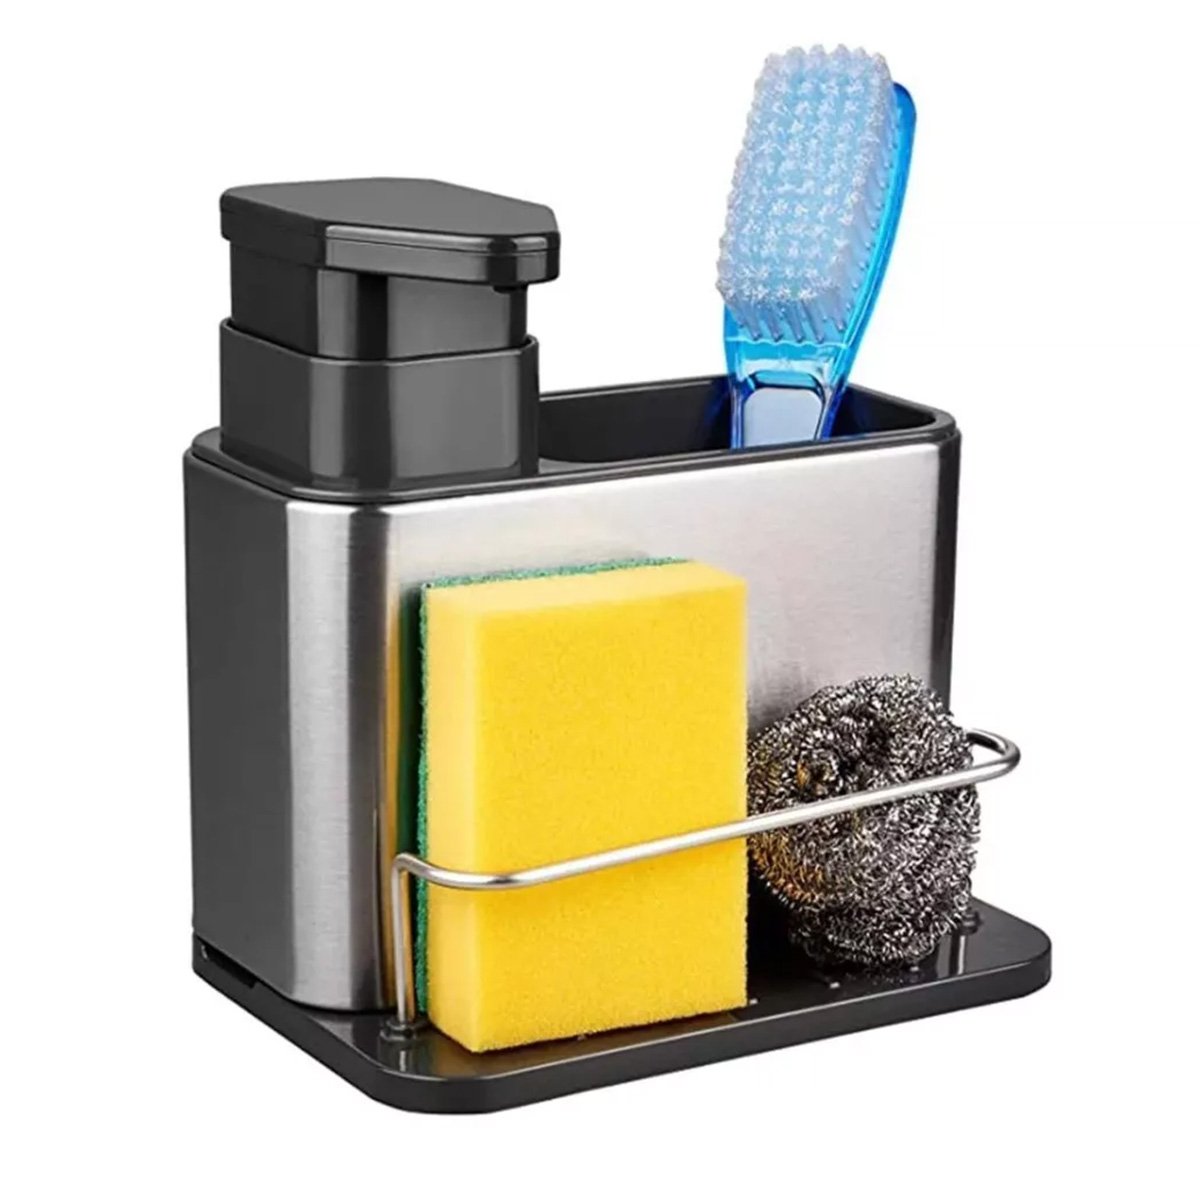 Dispenser Porta Detergente Escorredor Esponja 3 em 1 Inox Cozinha Pia Balcao Limpeza Higiene Escorre - 11